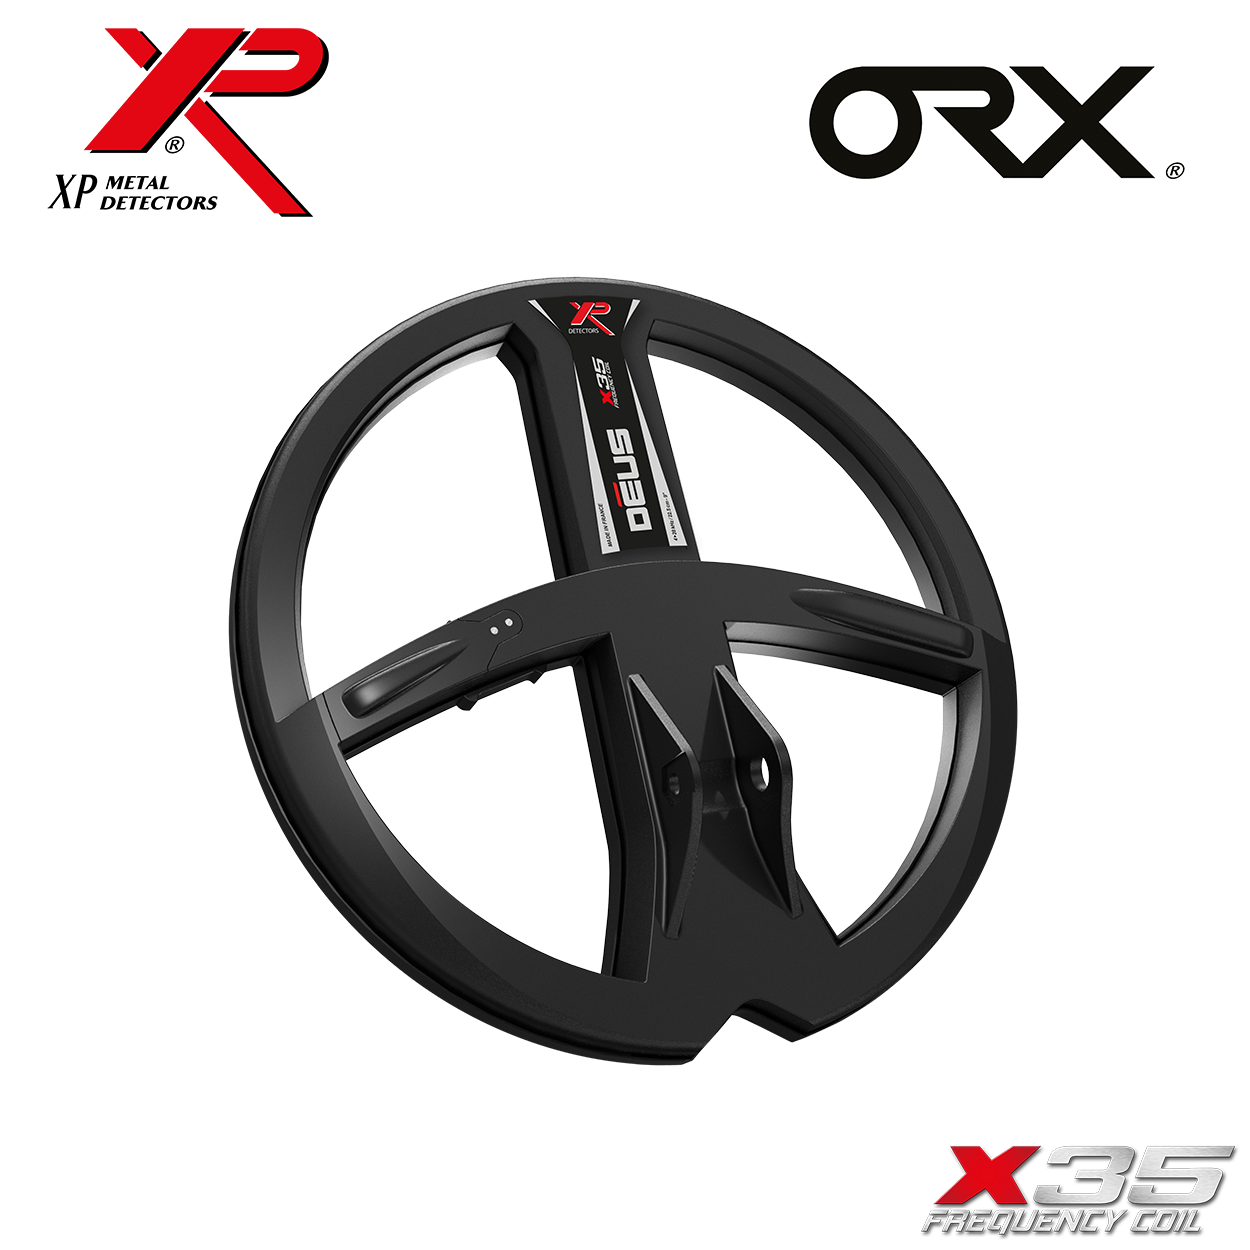 ORX WSA Metalldetektor XP X35 RC 22